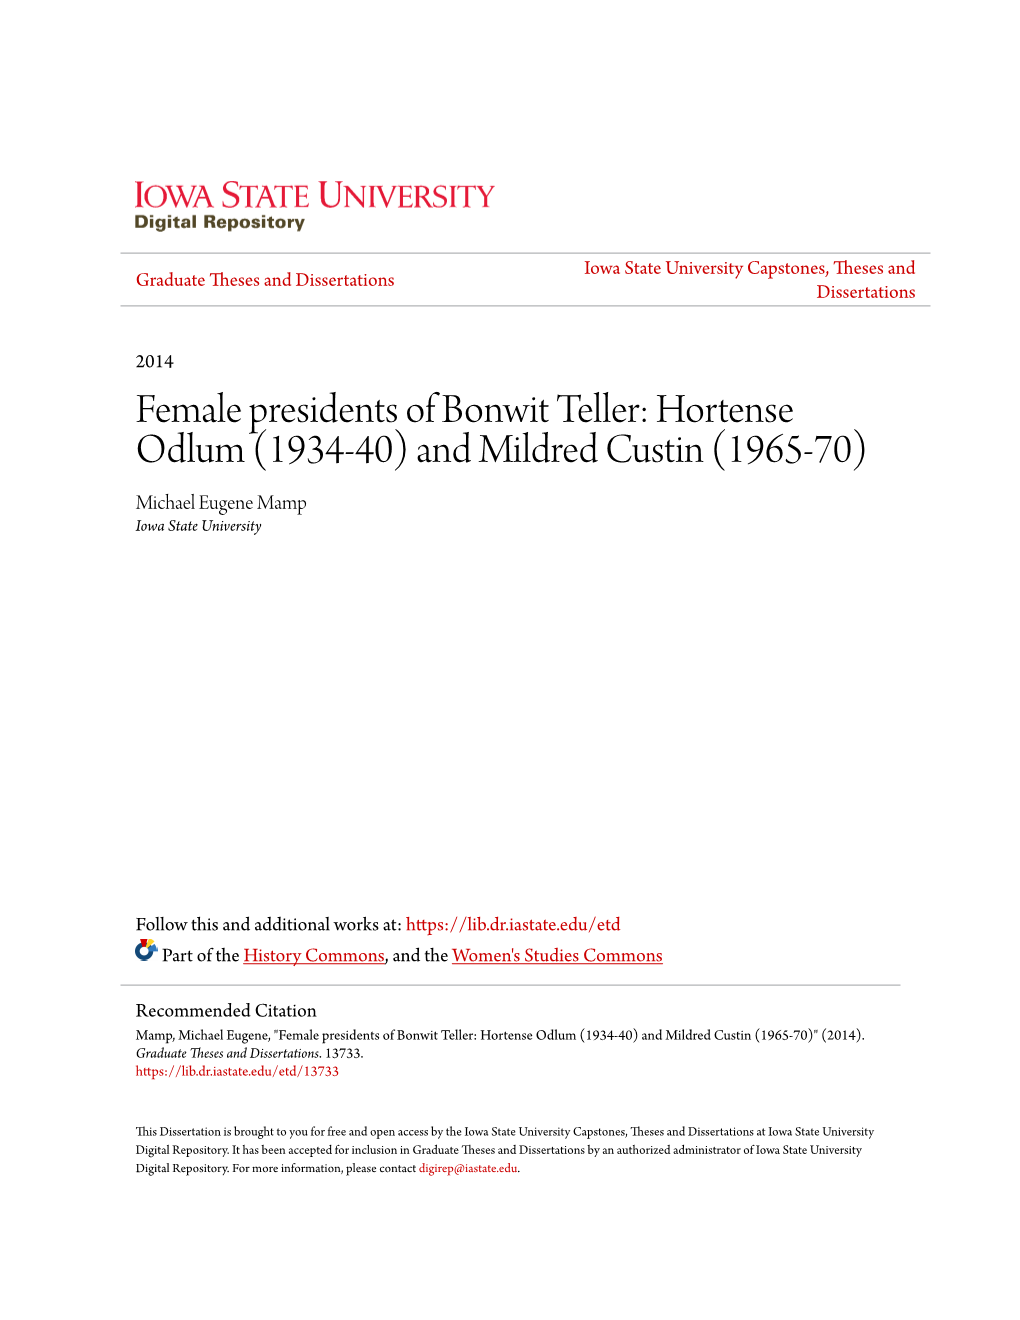 Female Presidents of Bonwit Teller: Hortense Odlum (1934-40) and Mildred Custin (1965-70) Michael Eugene Mamp Iowa State University